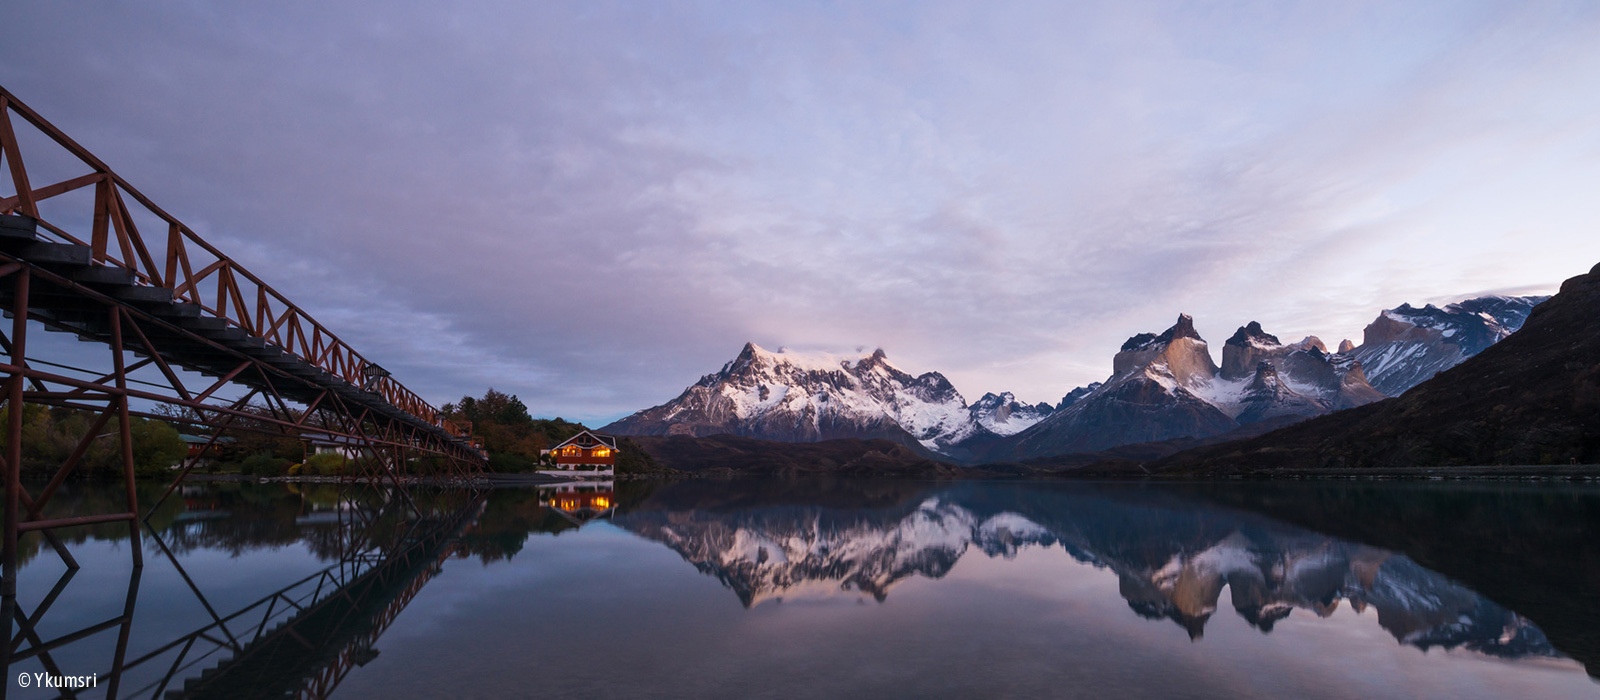 Chili - Argentine : Patagonie version luxe